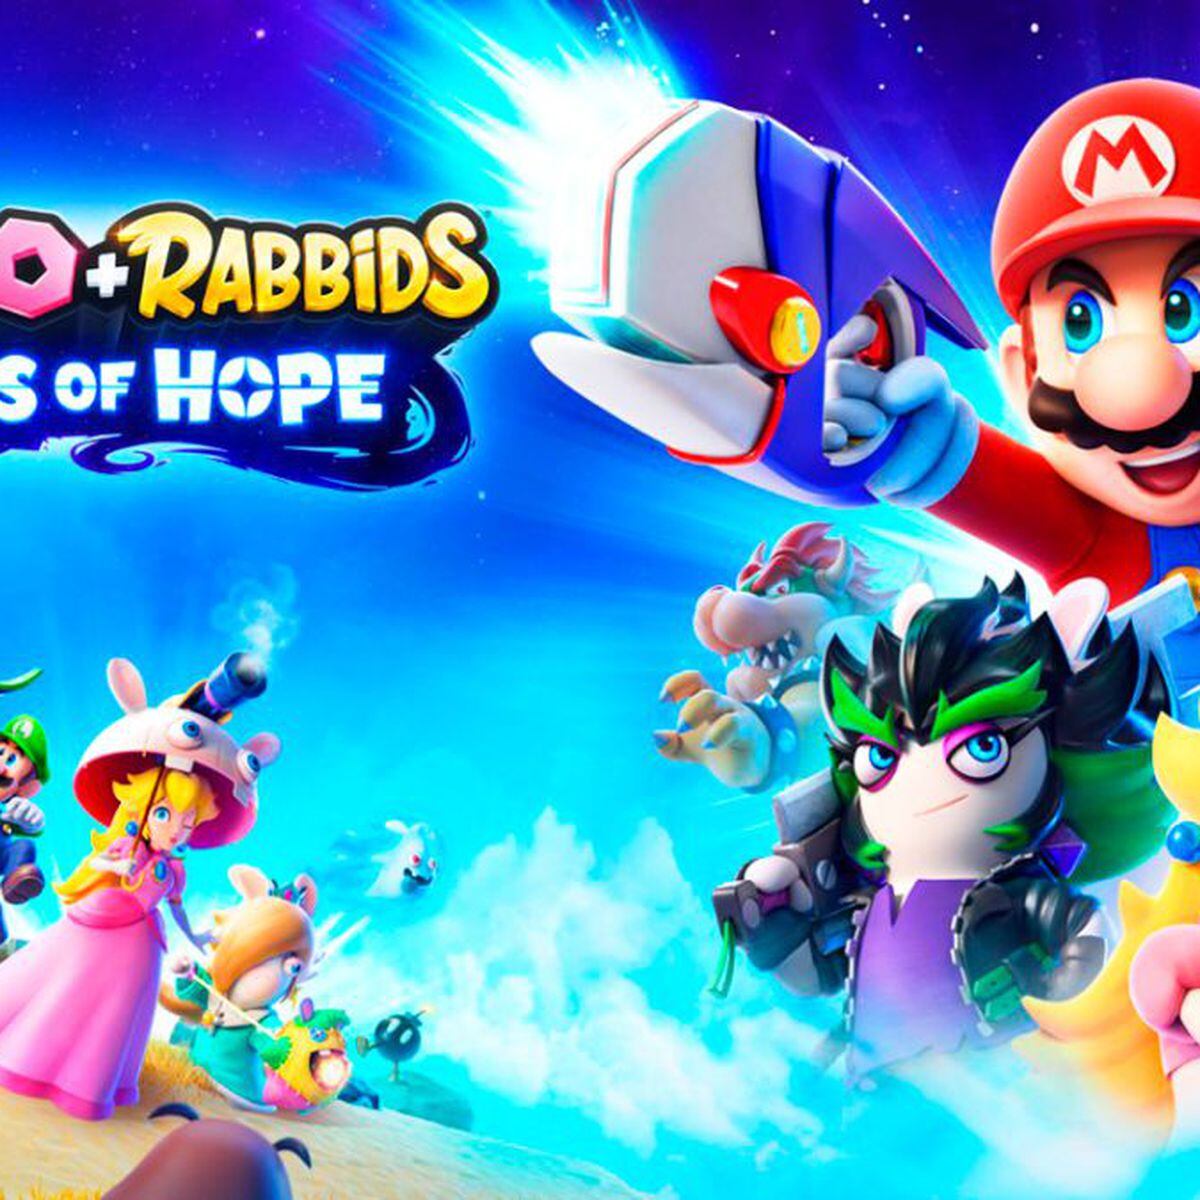 Mario + Rabbids: Sparks of Hope, impresiones. Ubisoft se saca otro conejo  de la chistera - Meristation